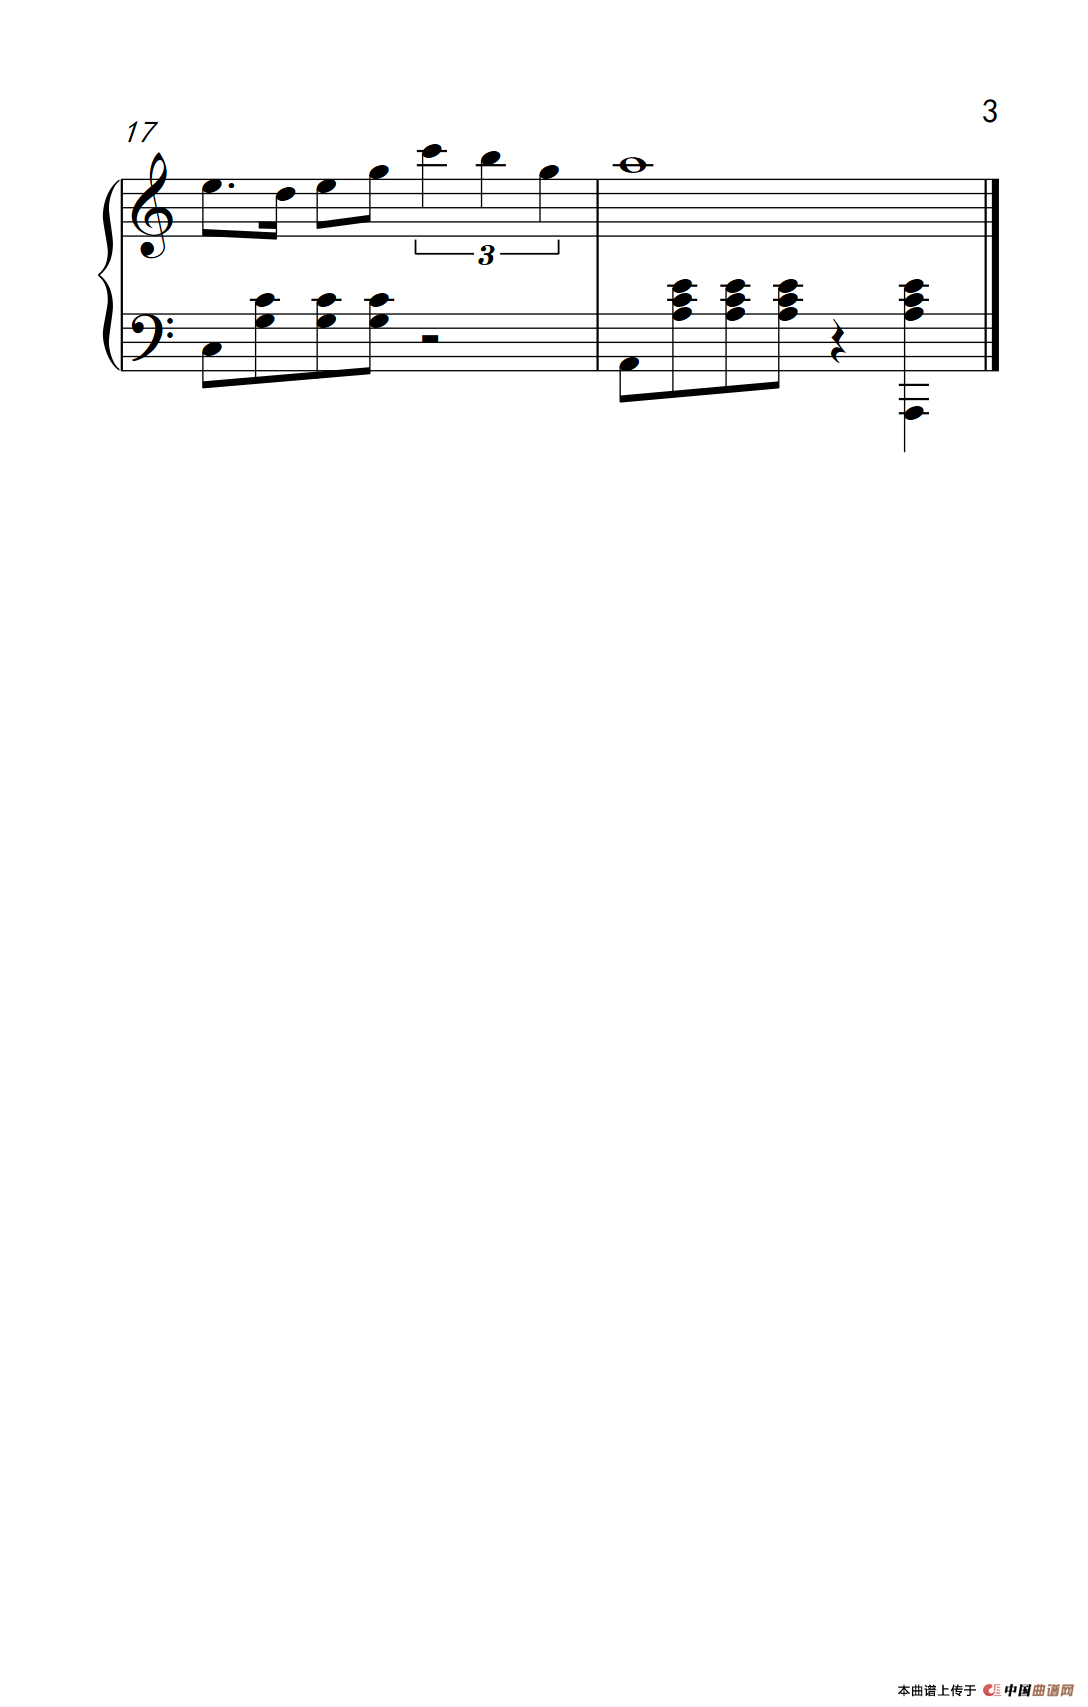 《欢乐斗地主-3》钢琴曲谱图分享